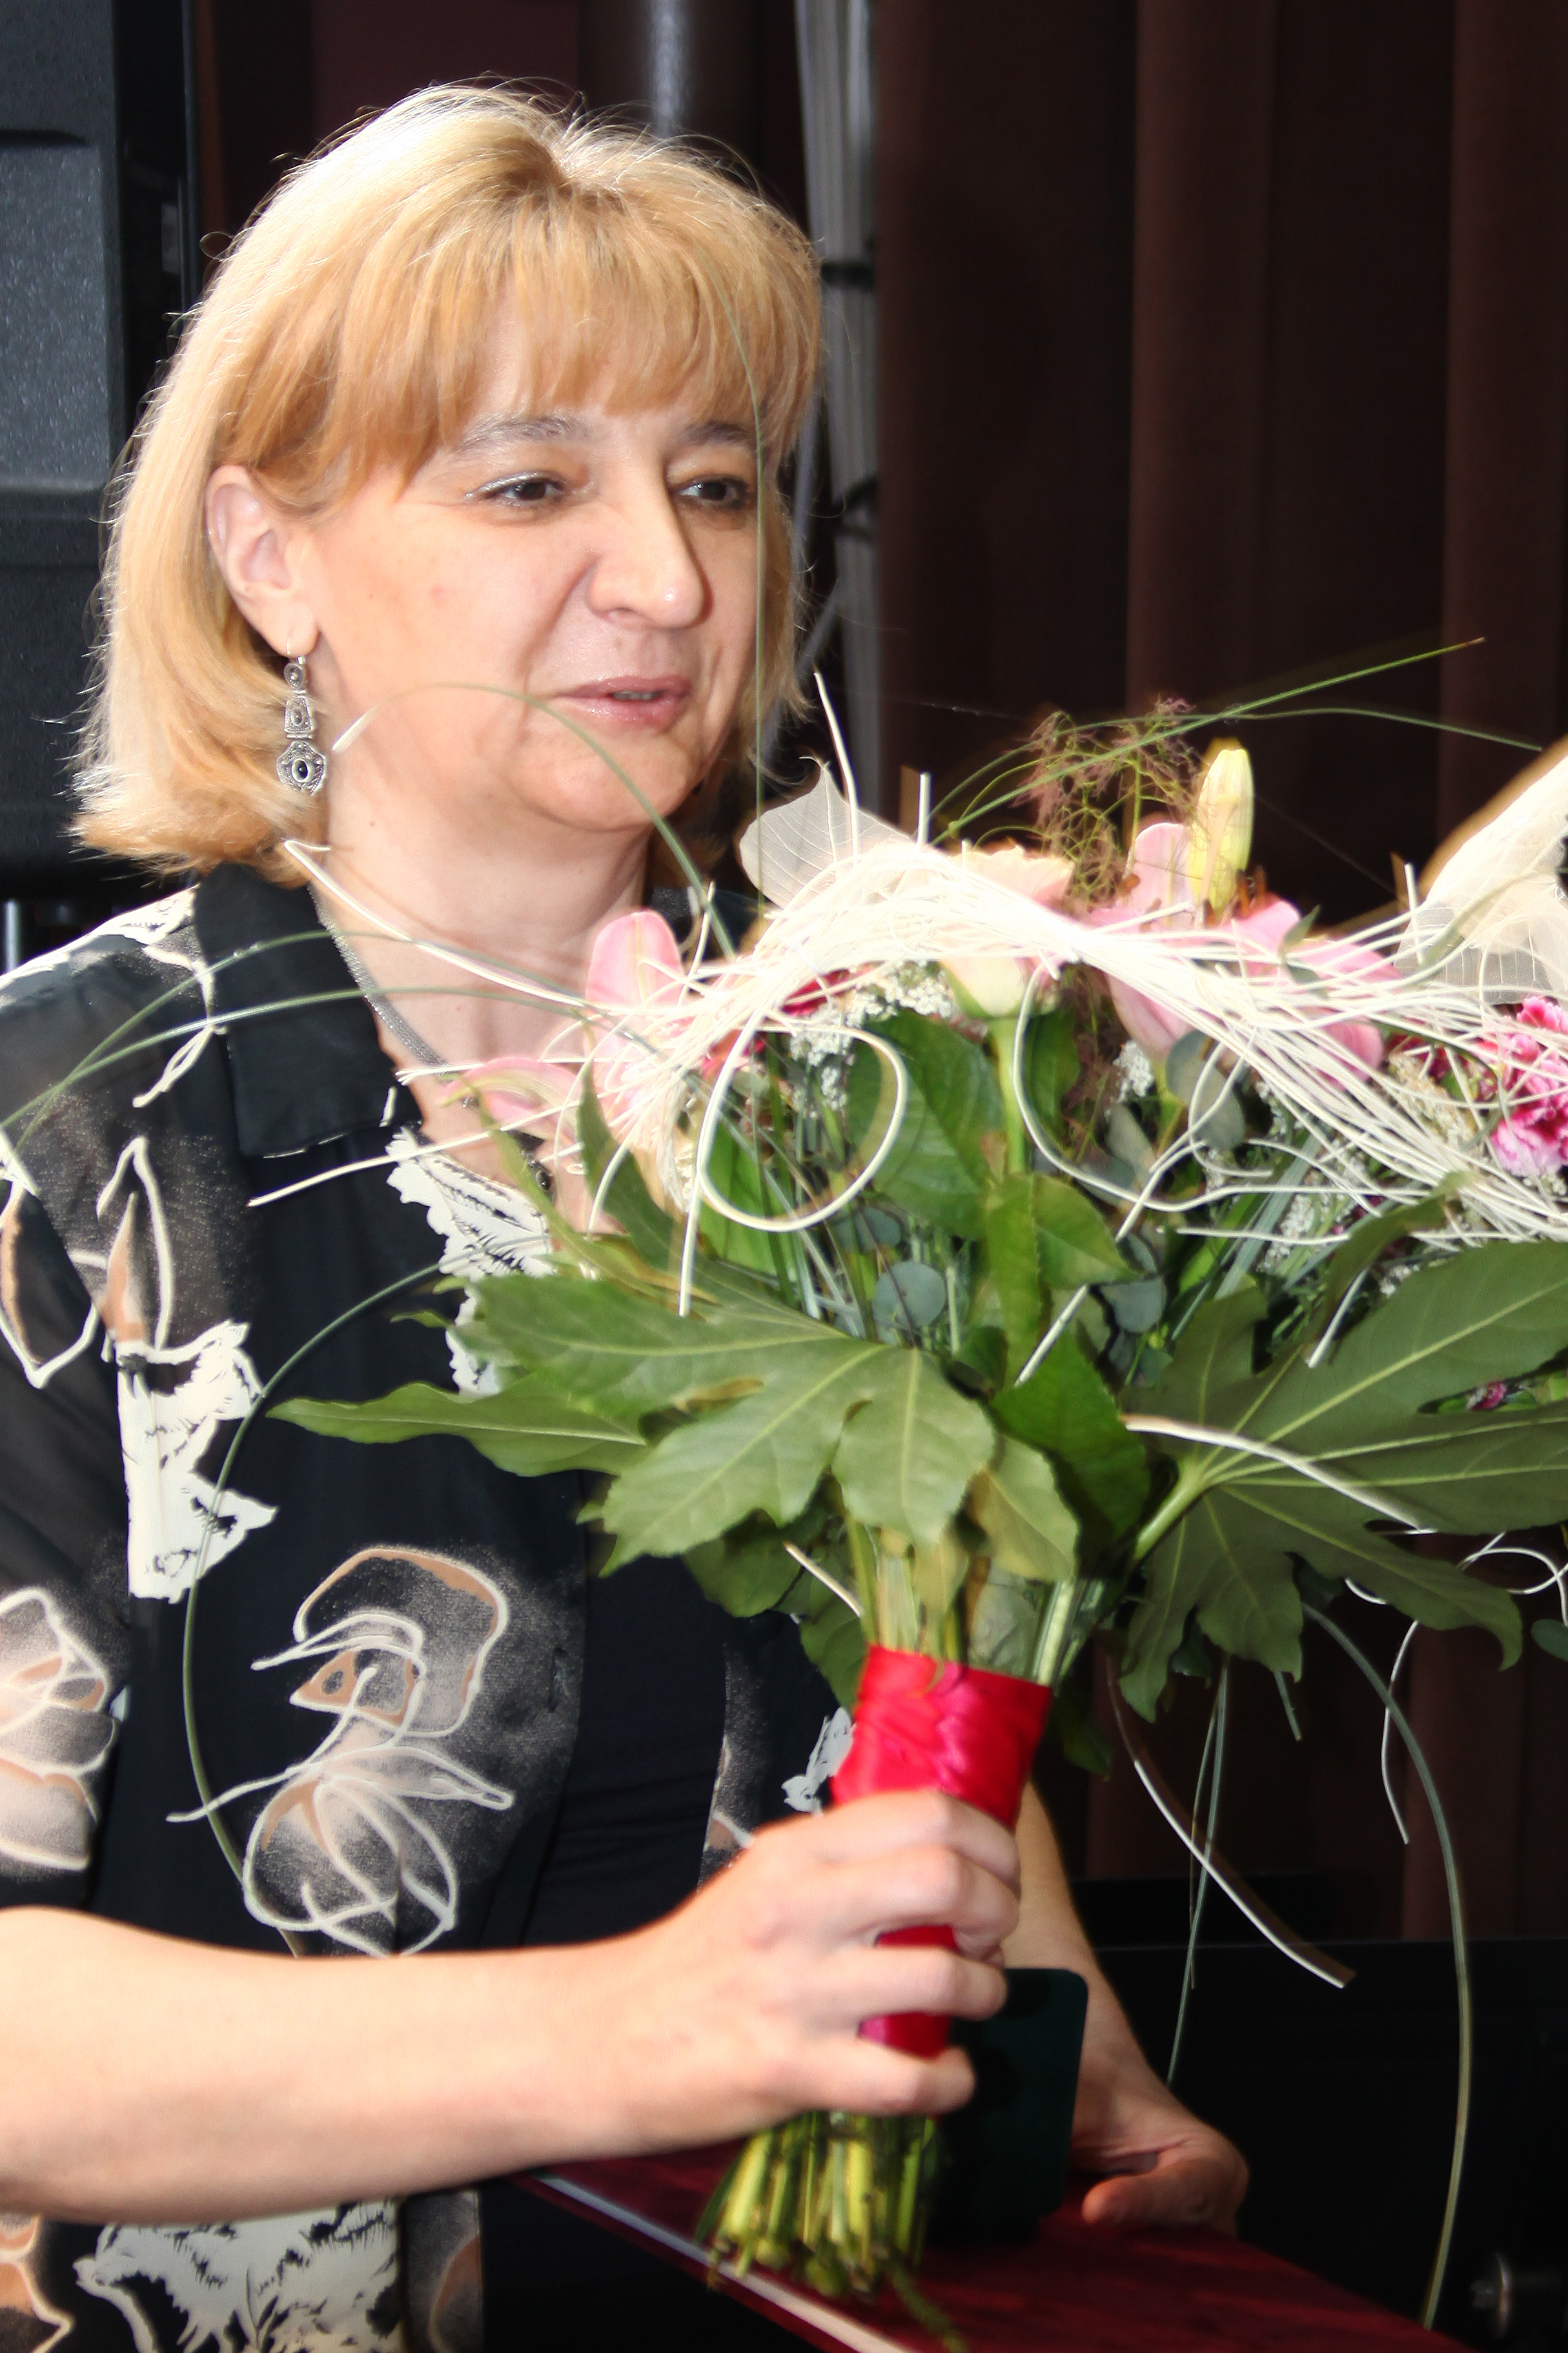 Paréj Józsefné, a Gyermekjóléti és Családsegítő Szolgálat vezetője, Dunaharaszti Gyermekeiért Kitüntető Díj birtokosa 2010-ben